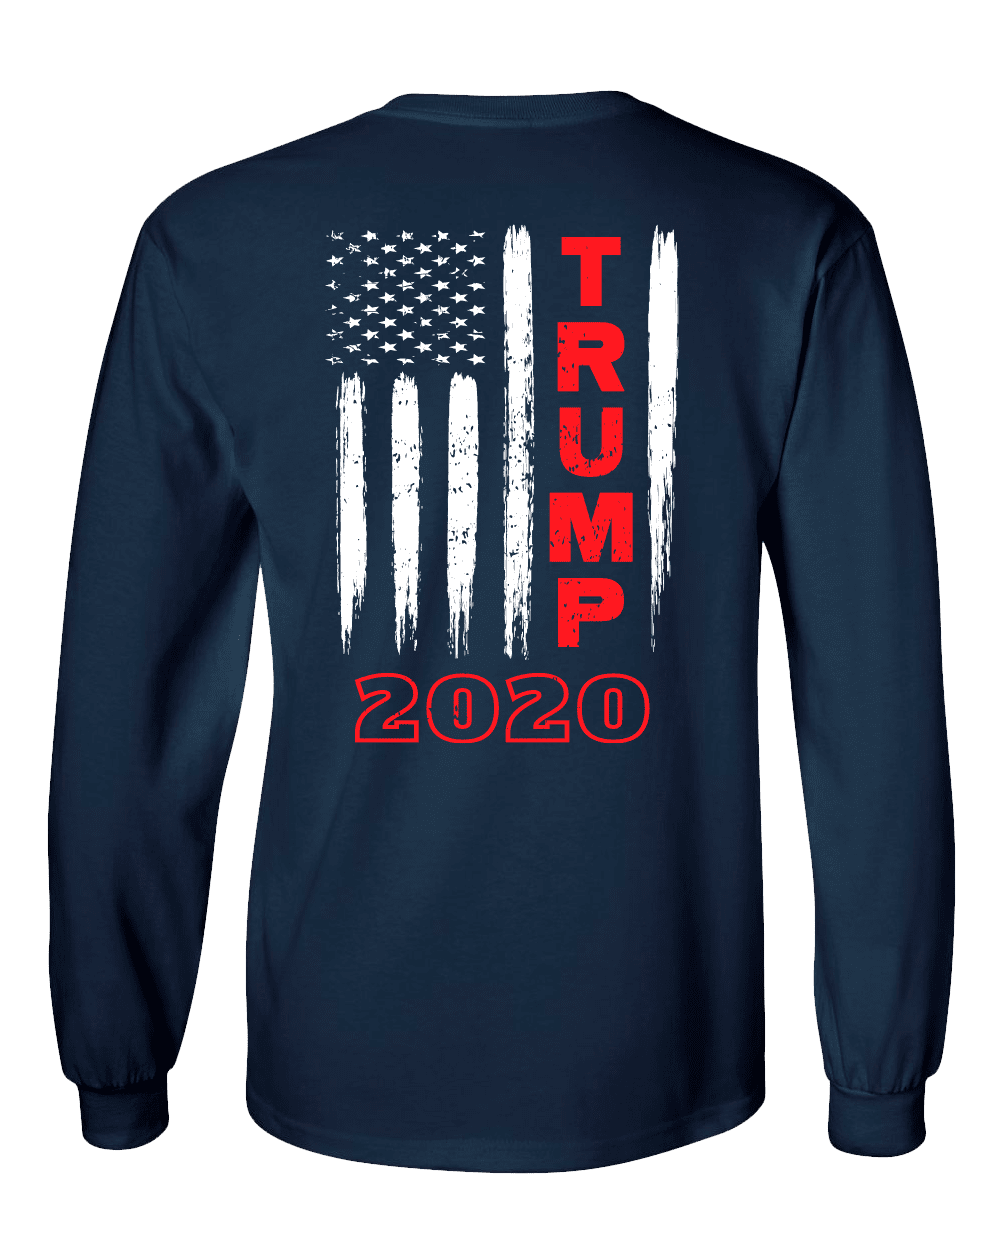 Patriotic American Flag Soldiers Adult Unisex Bleached Acid Wash Tee Shirt Tshirt